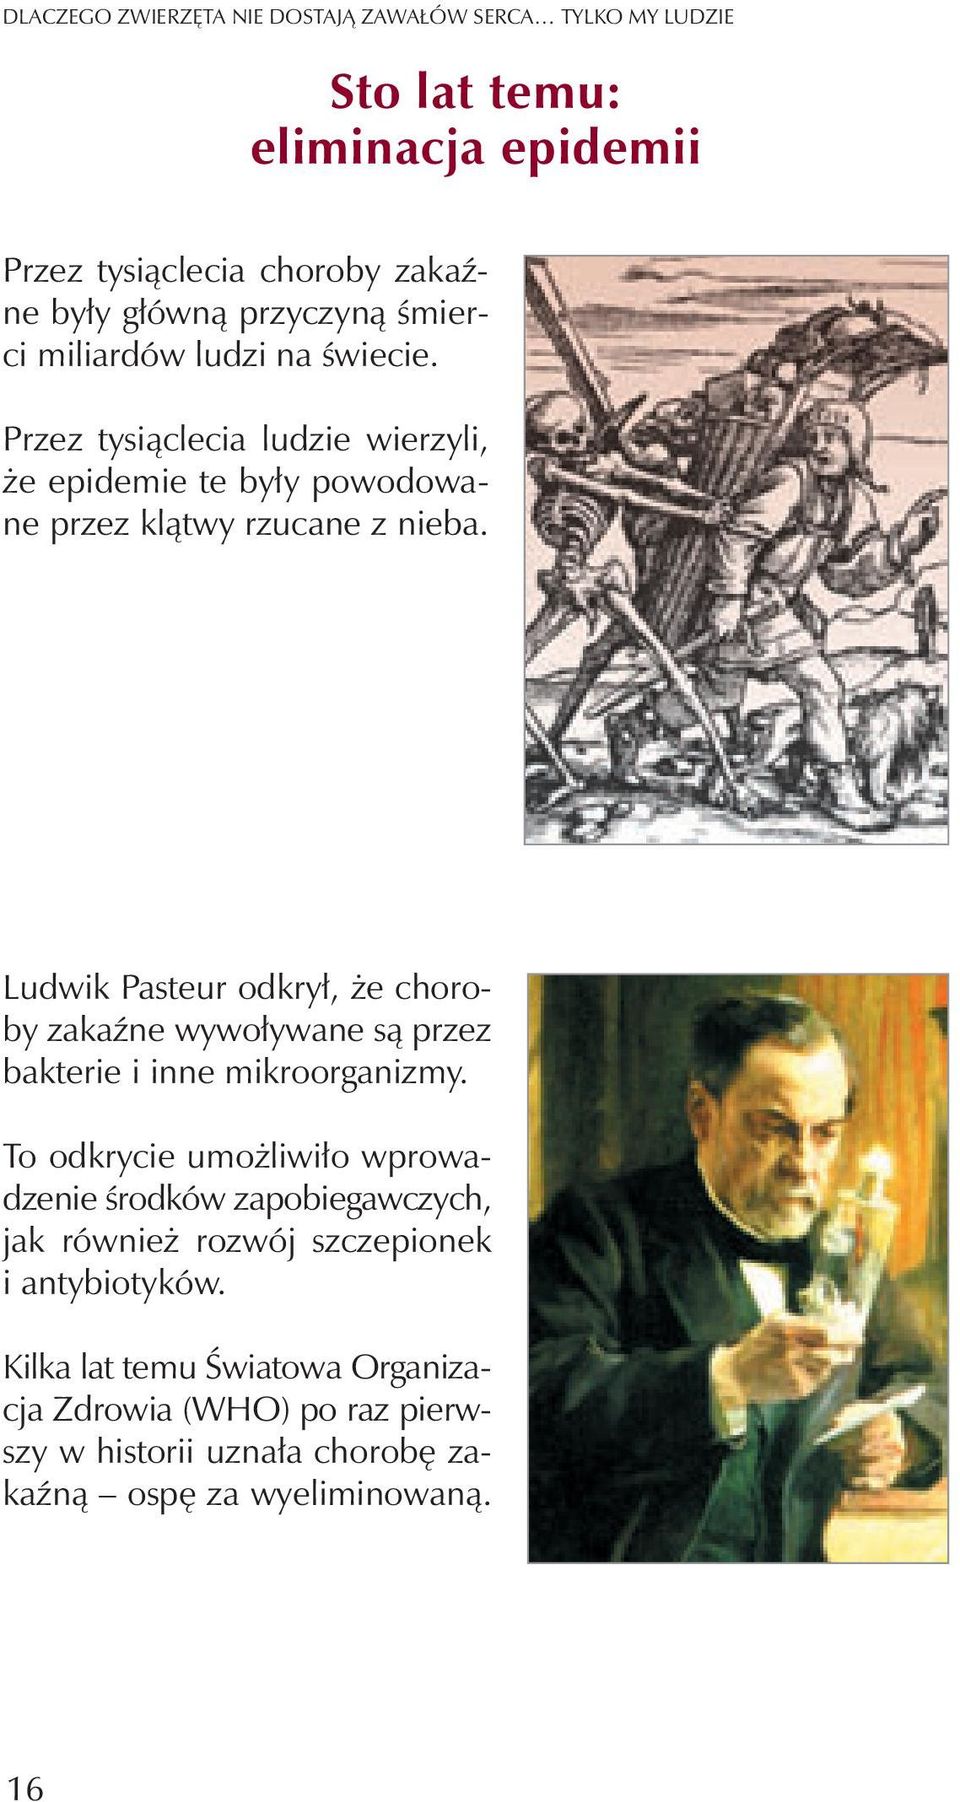 Ludwik Pasteur odkry³, e choroby zakaÿne wywo³ywane s¹ przez bakterie i inne mikroorganizmy.